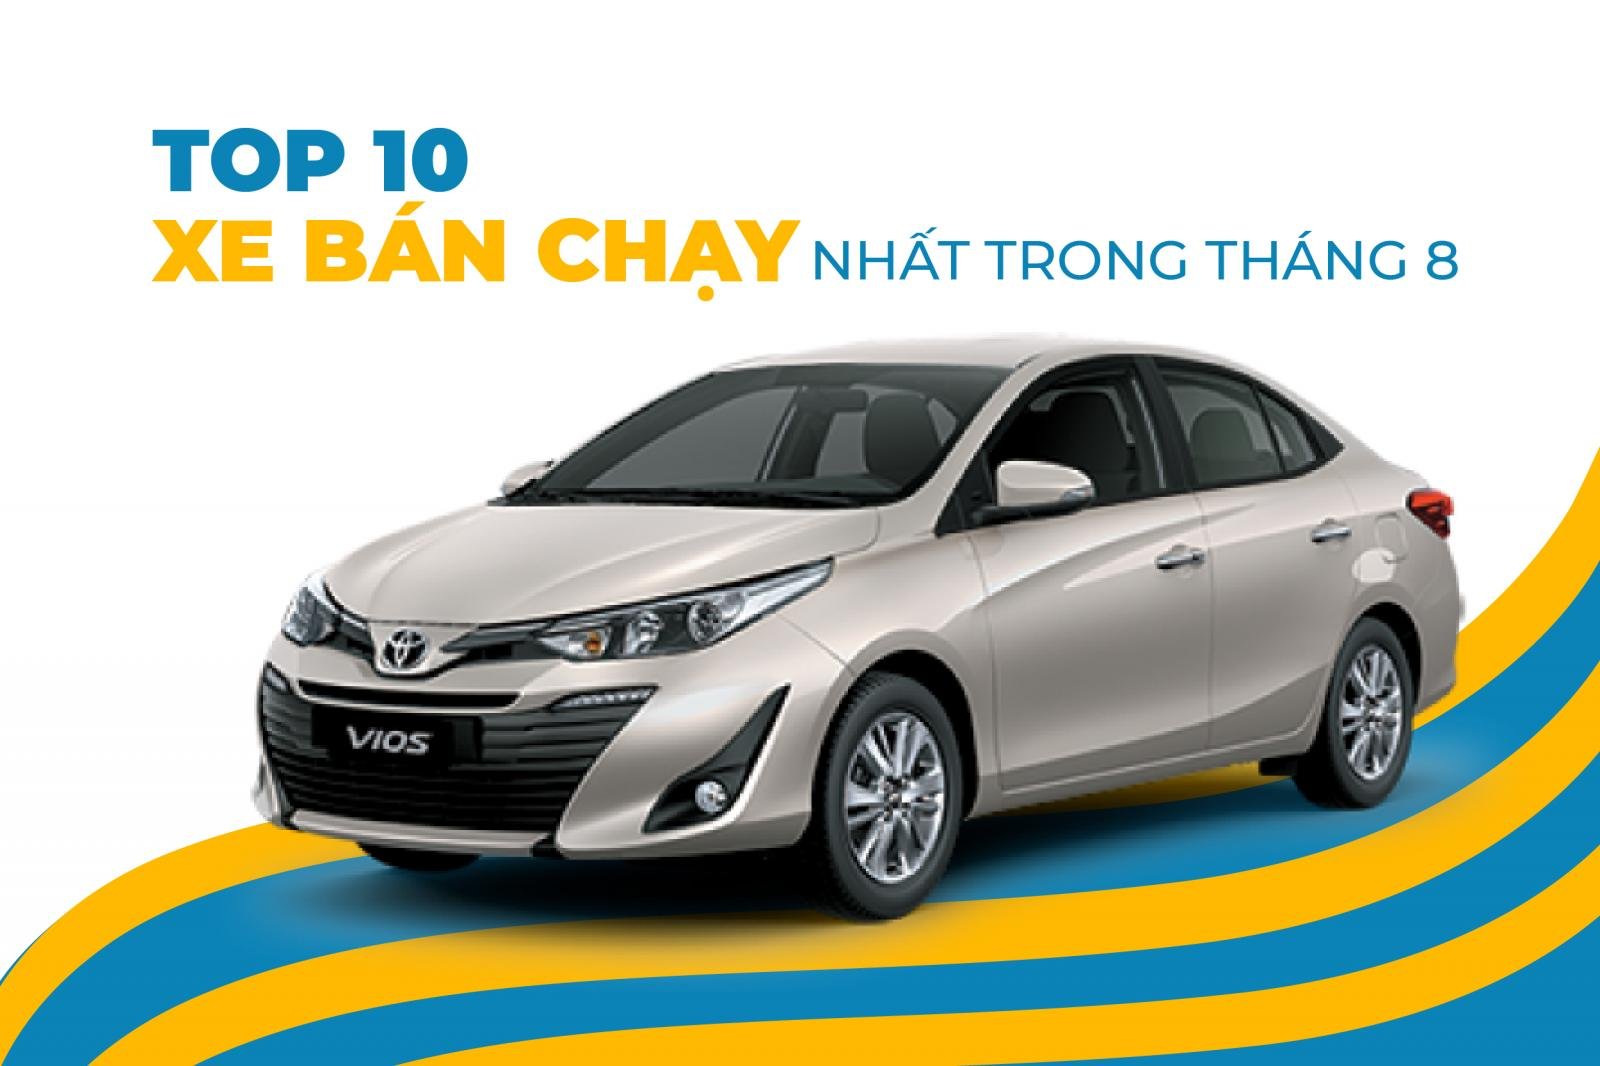 Nhìn lại những 'điểm nóng' trên thị trường ô tô Việt từ đầu năm đến nay.